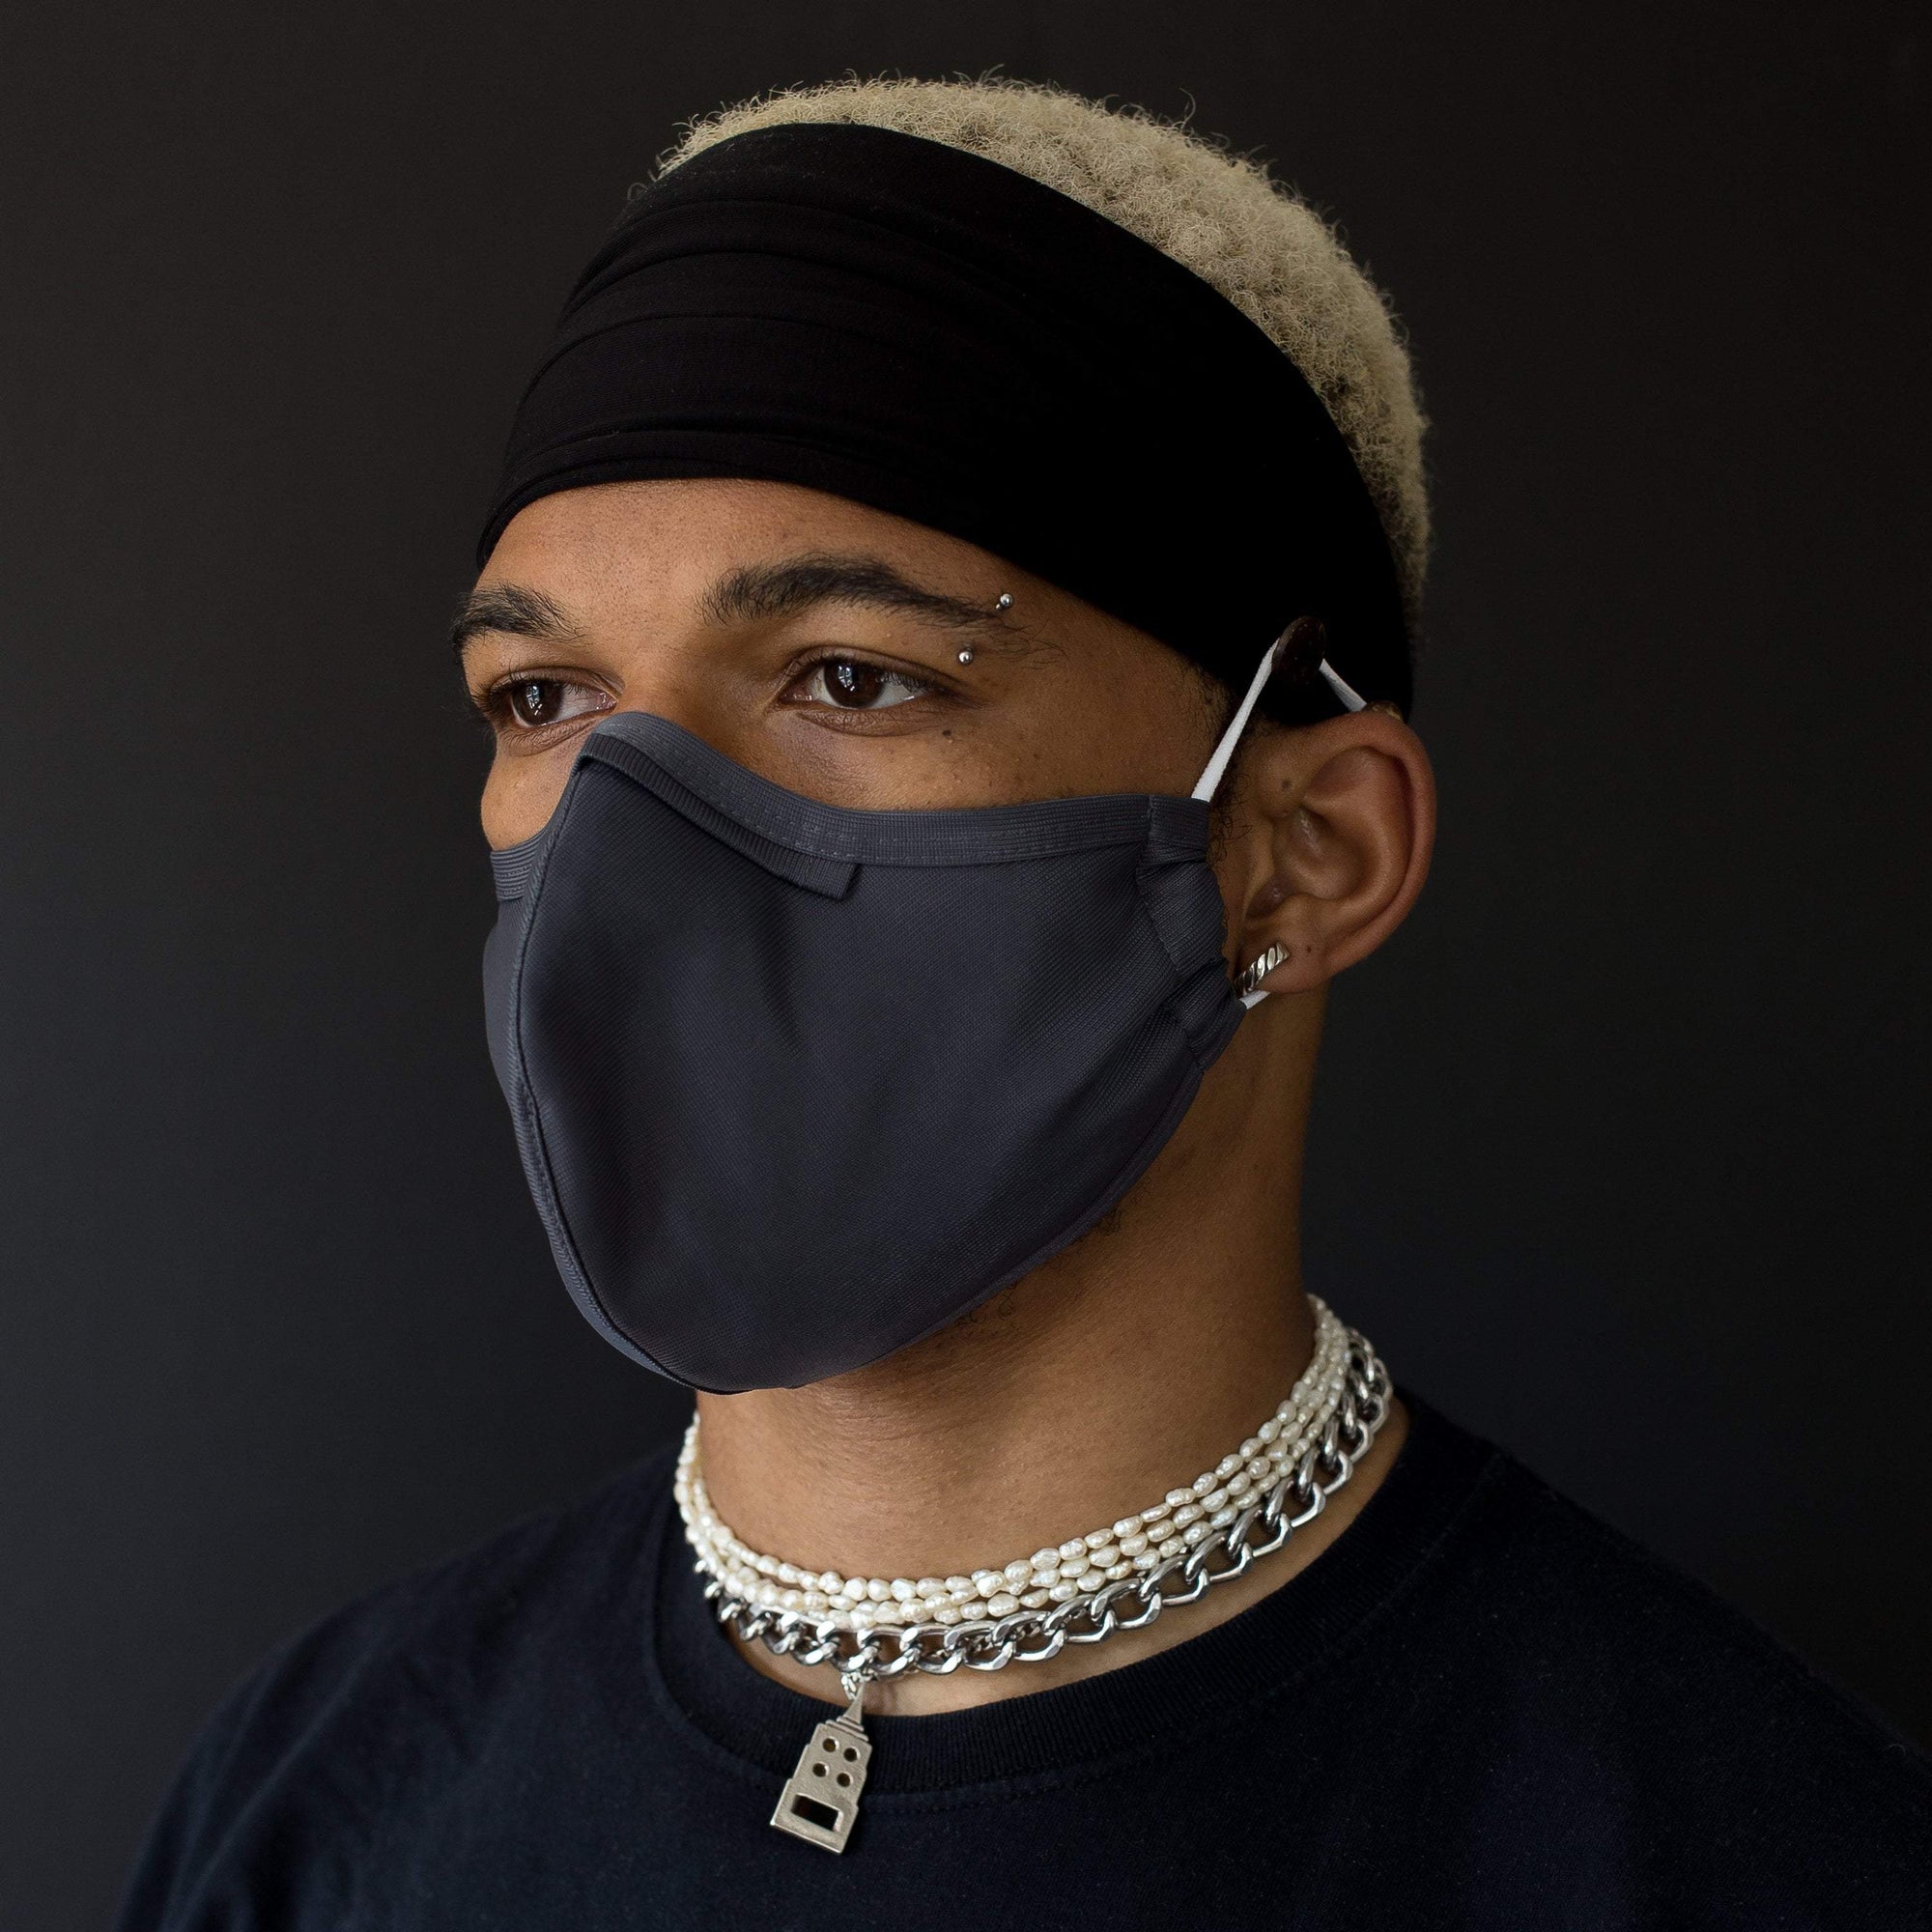 The Mask Headband